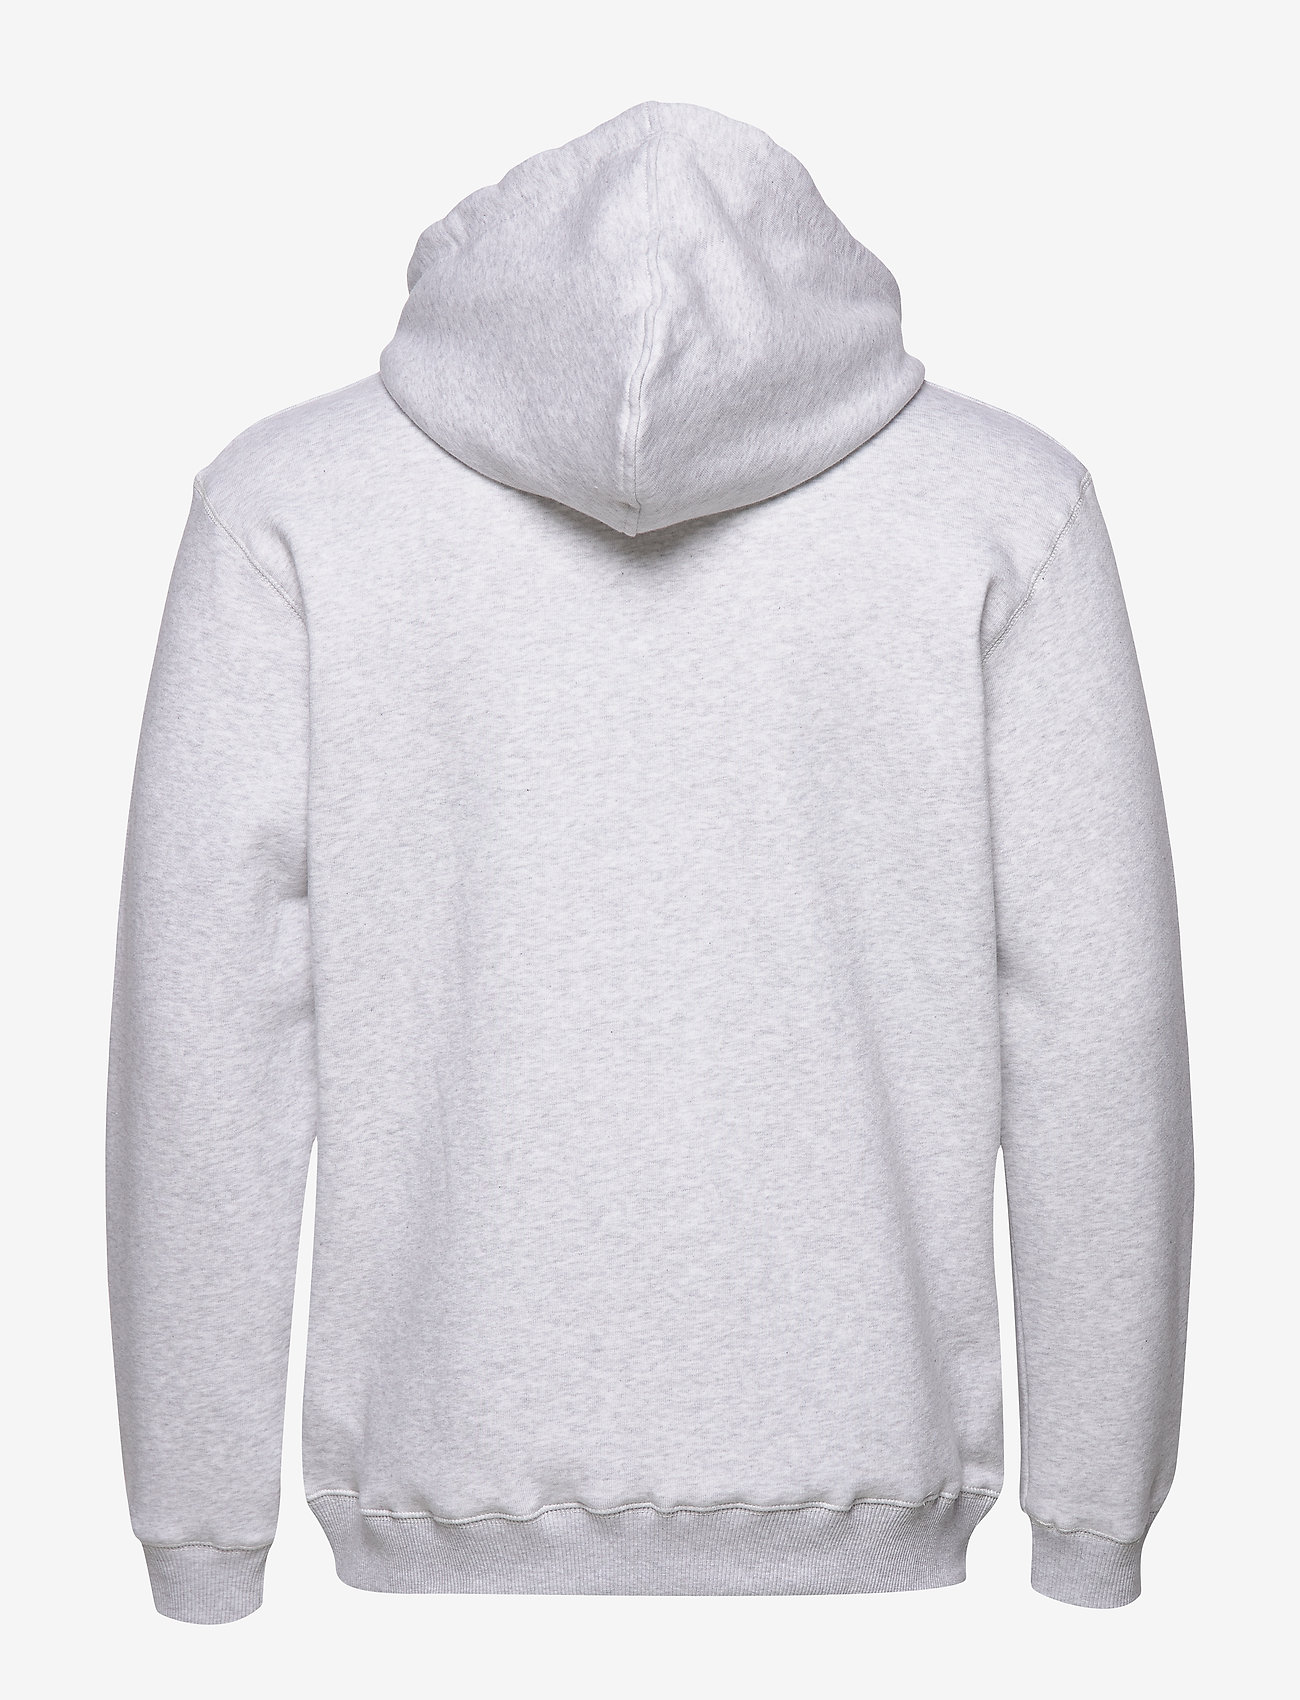 Makia - Brand Hooded Sweatshirt - sweatshirts - light grey - 1